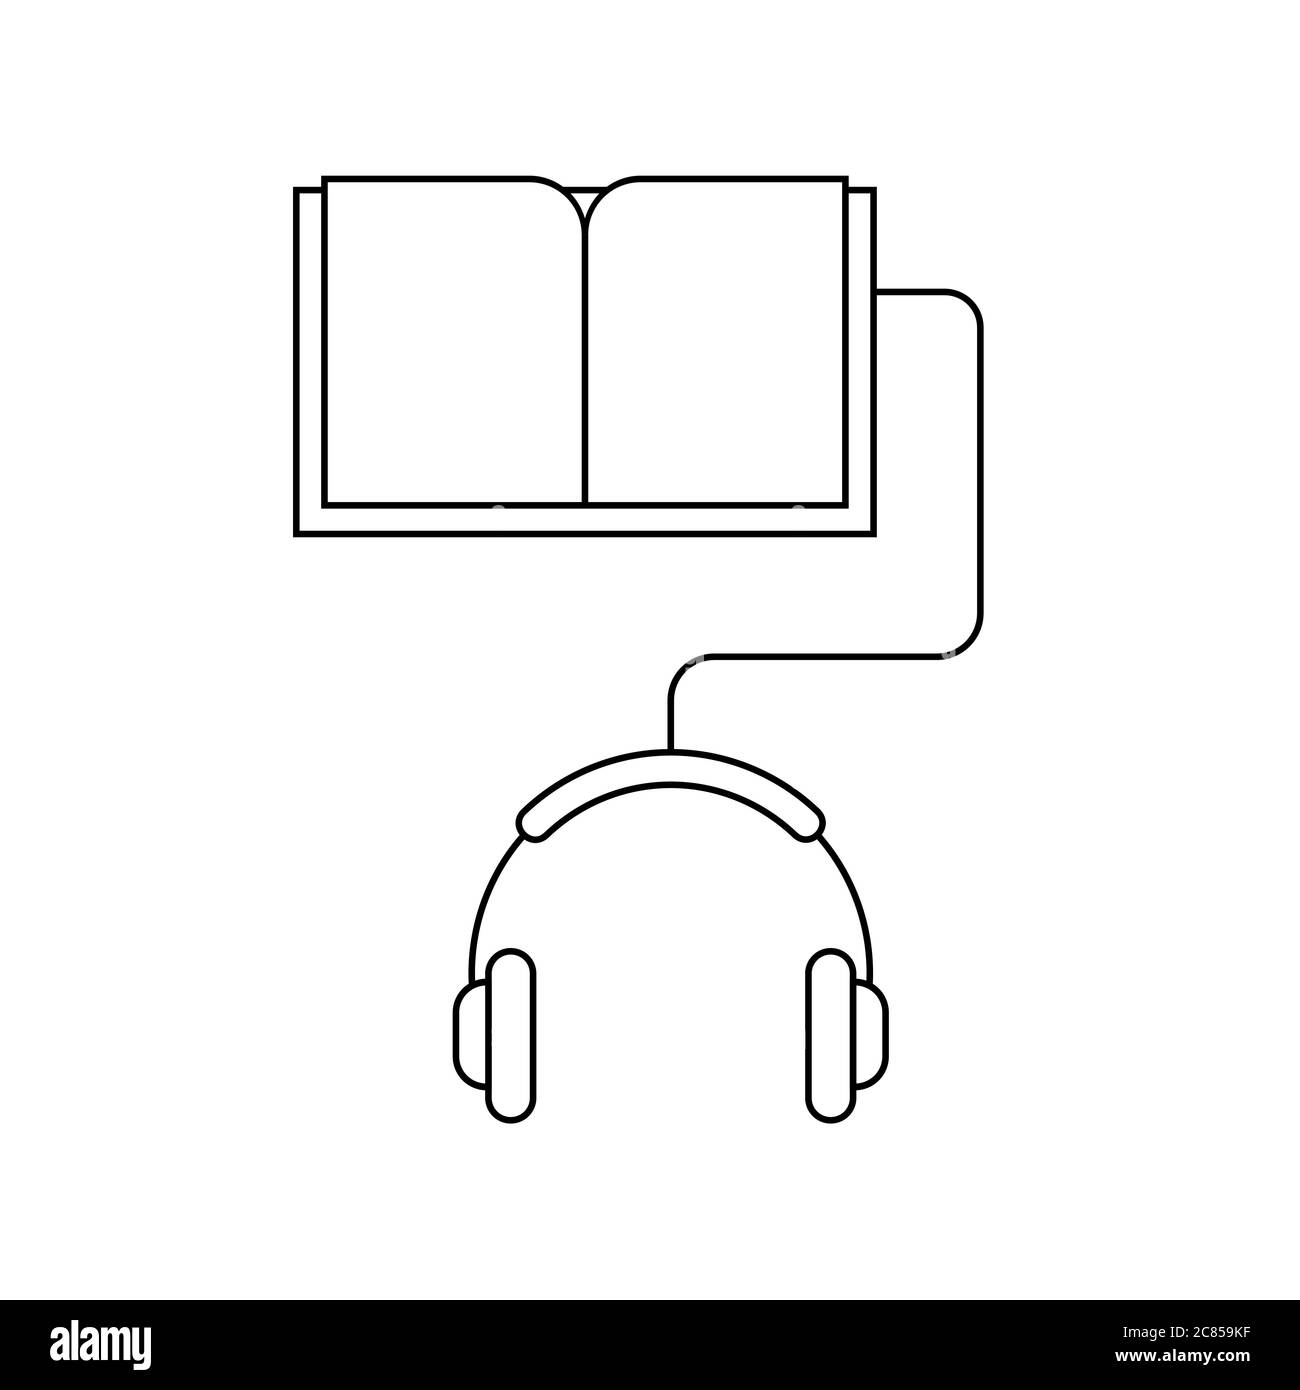 Hören von elektronischen Büchern. Hörbuch-Konzept. Kopfhörer mit einem Buch verbunden. Liniensymbol. Online-Bibliothek. Fernunterricht. Schwarzer Umriss. Vektor Stock Vektor